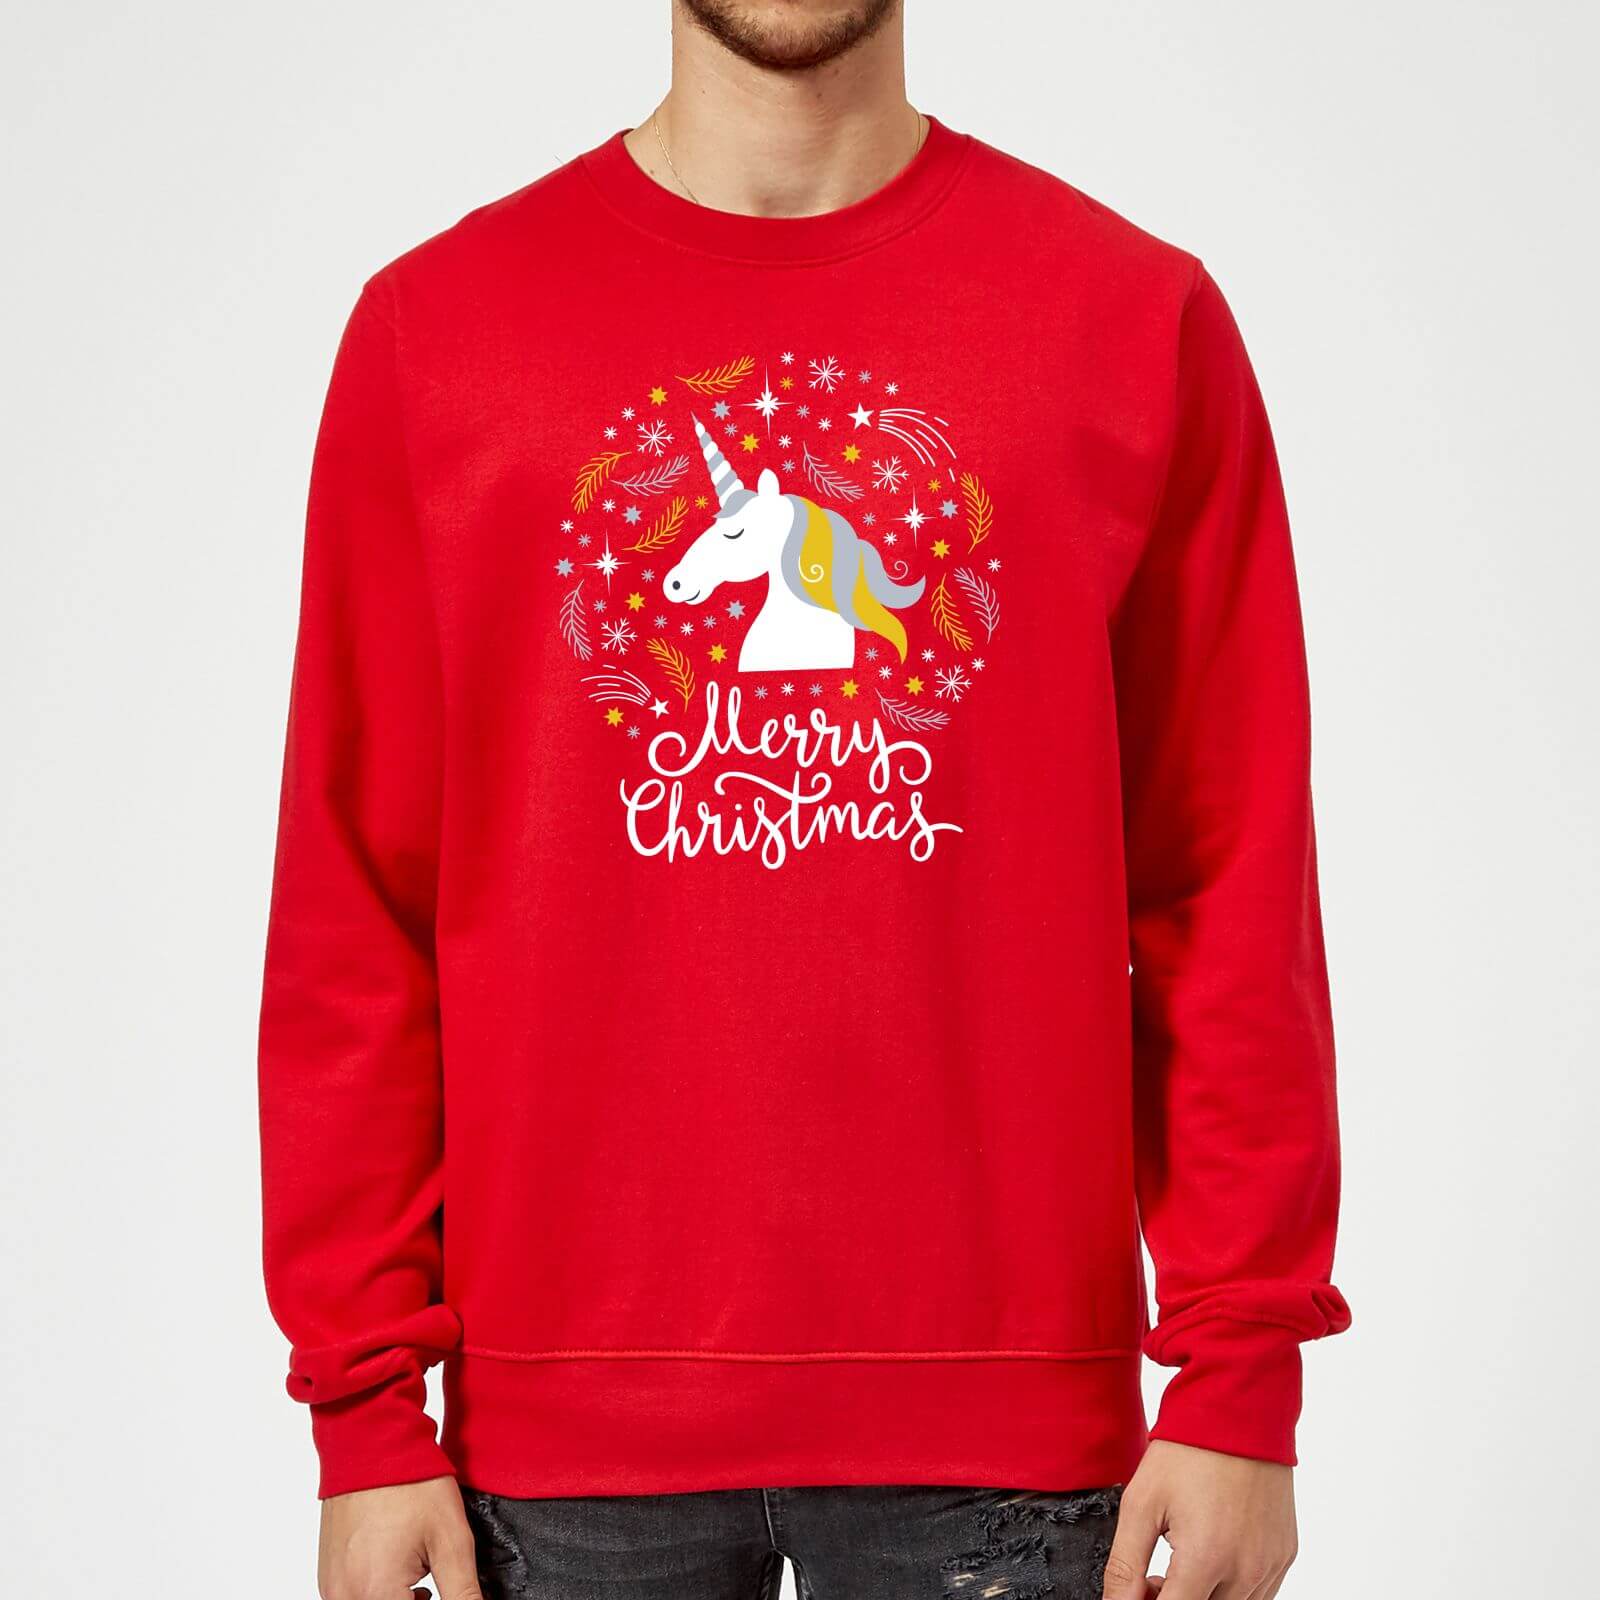 Unicorn Christmas Red Sweatshirt - M - Red